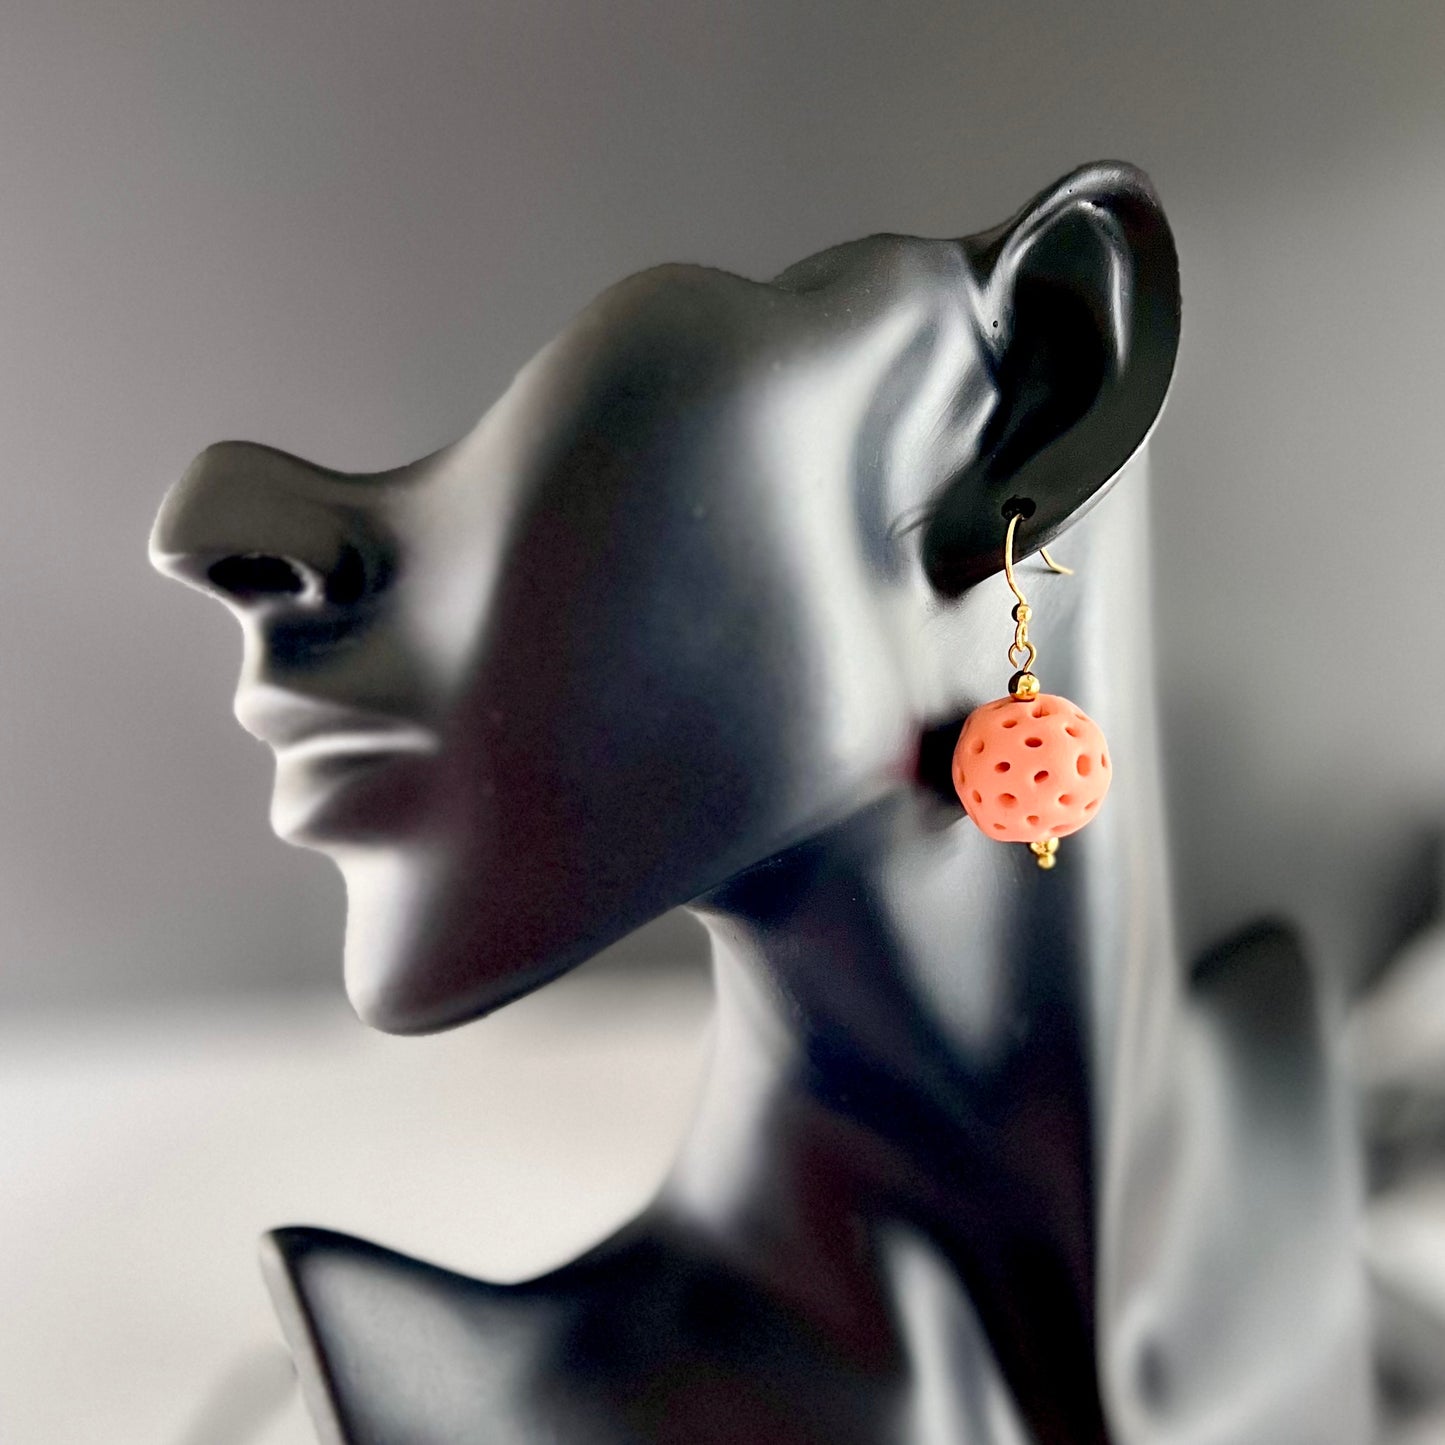 Peach coral balls medium drop earrings 